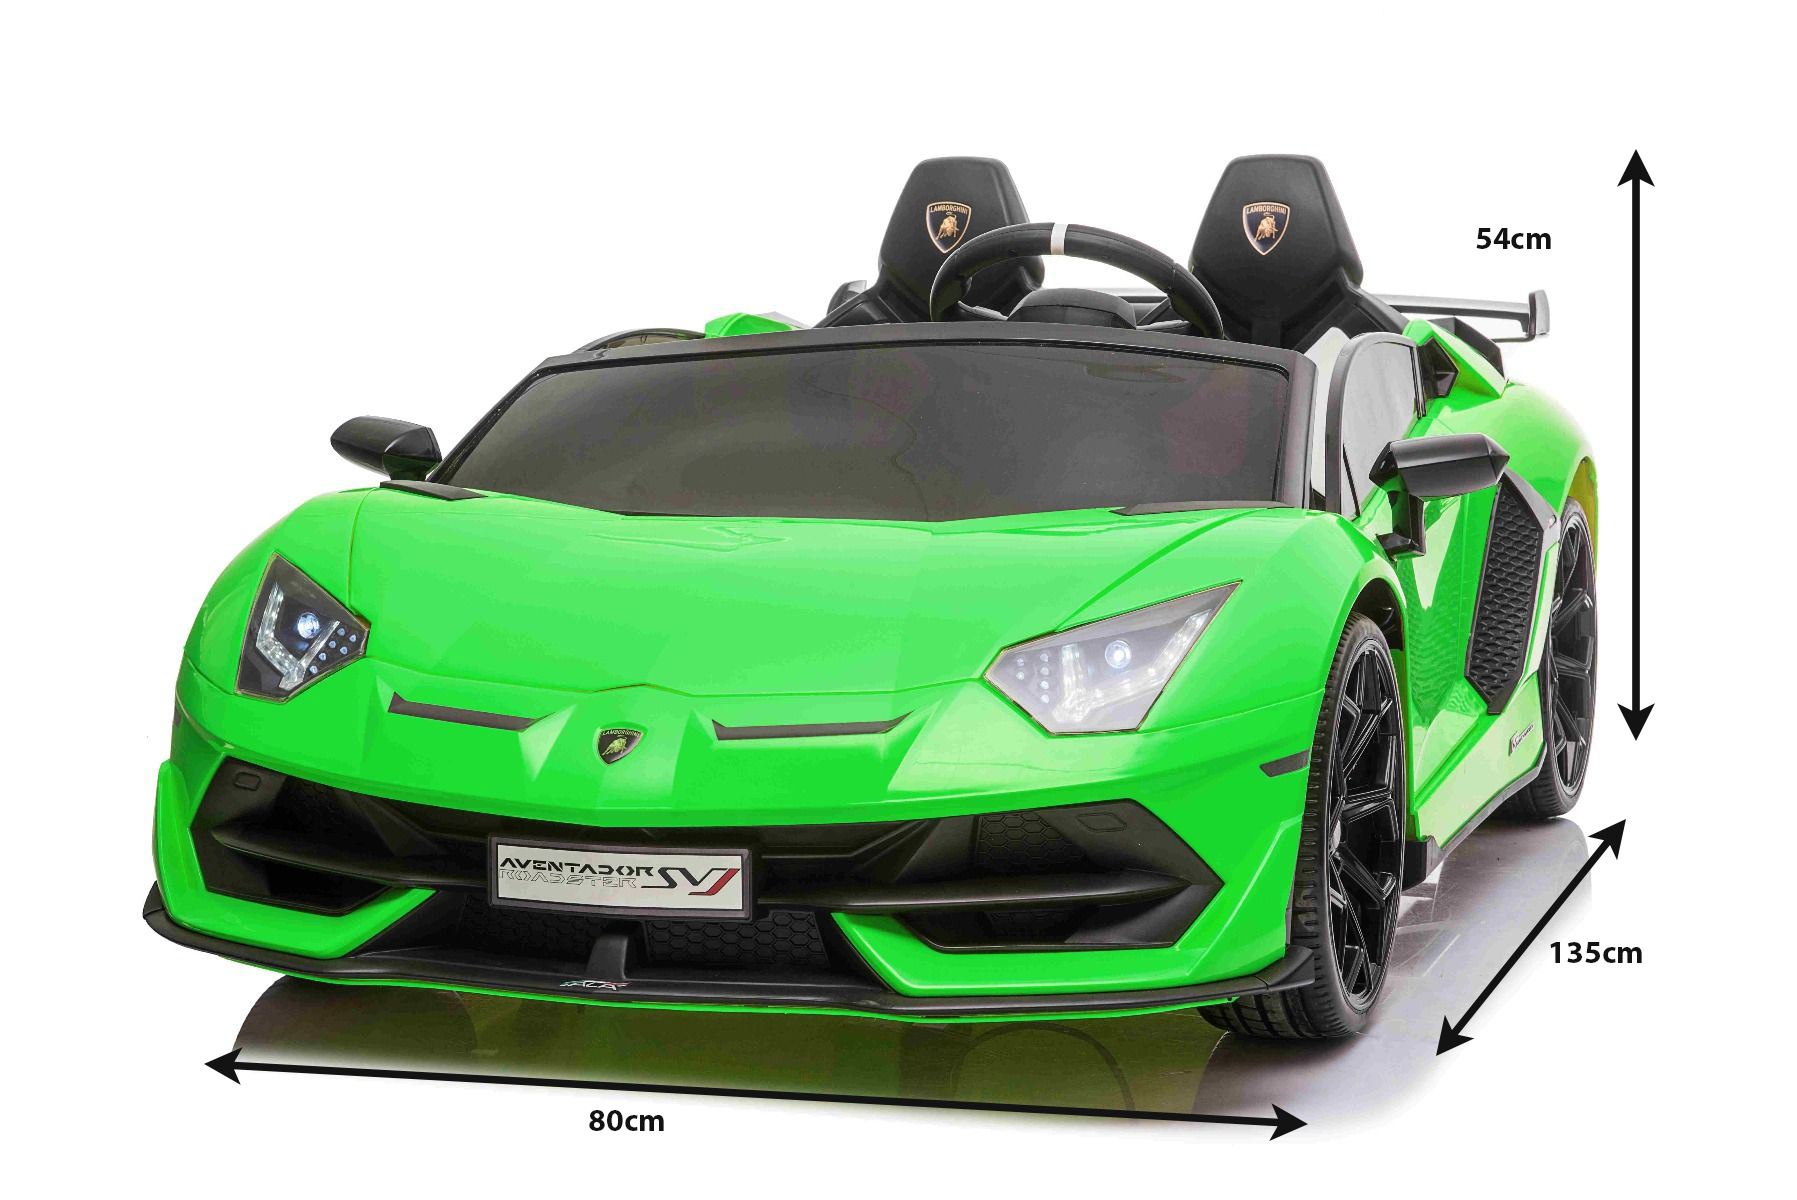 Elektroauto für Kinder Lamborghini Aventador 12V für zwei Benutzer, grün,  vertikal öffnende Türen, 2 x 12V Motor, 12V Batterie, 2,4 GHz  Fernbedienung, weiche EVA-Räder, Federung, Sanftanlauf, MP3-Player mit USB,  Original lizenziert